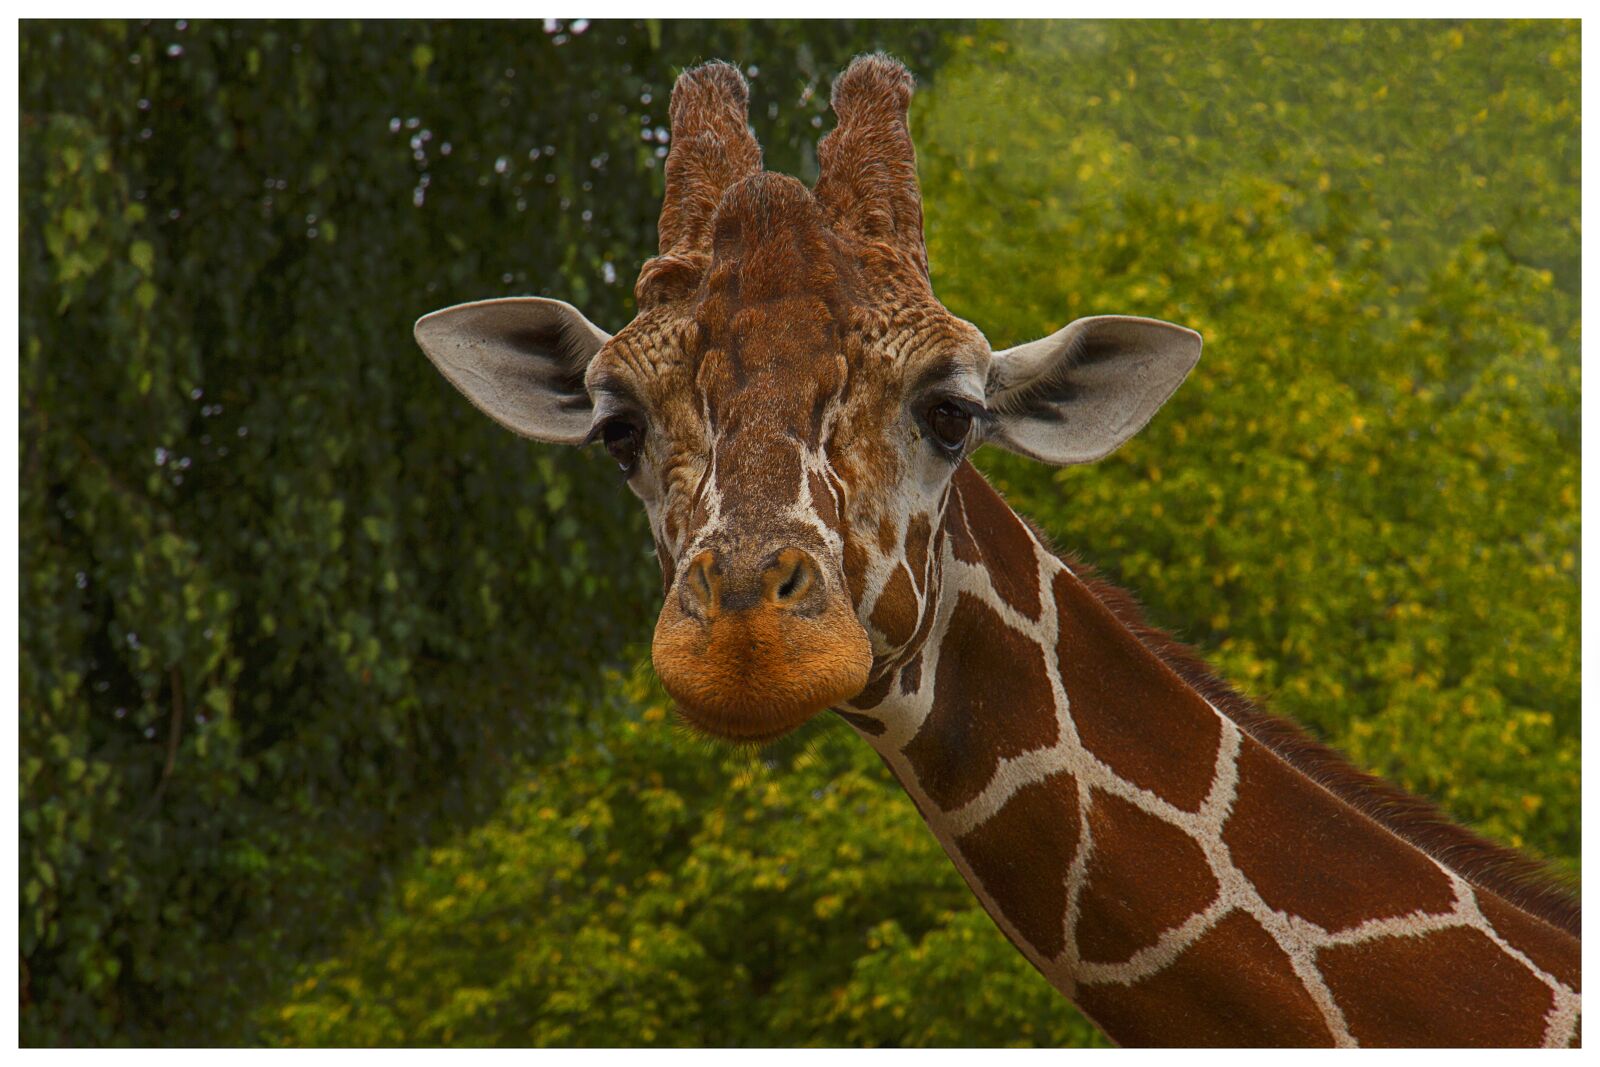 Canon EOS 7D sample photo. Giraffe, animal, nature photography